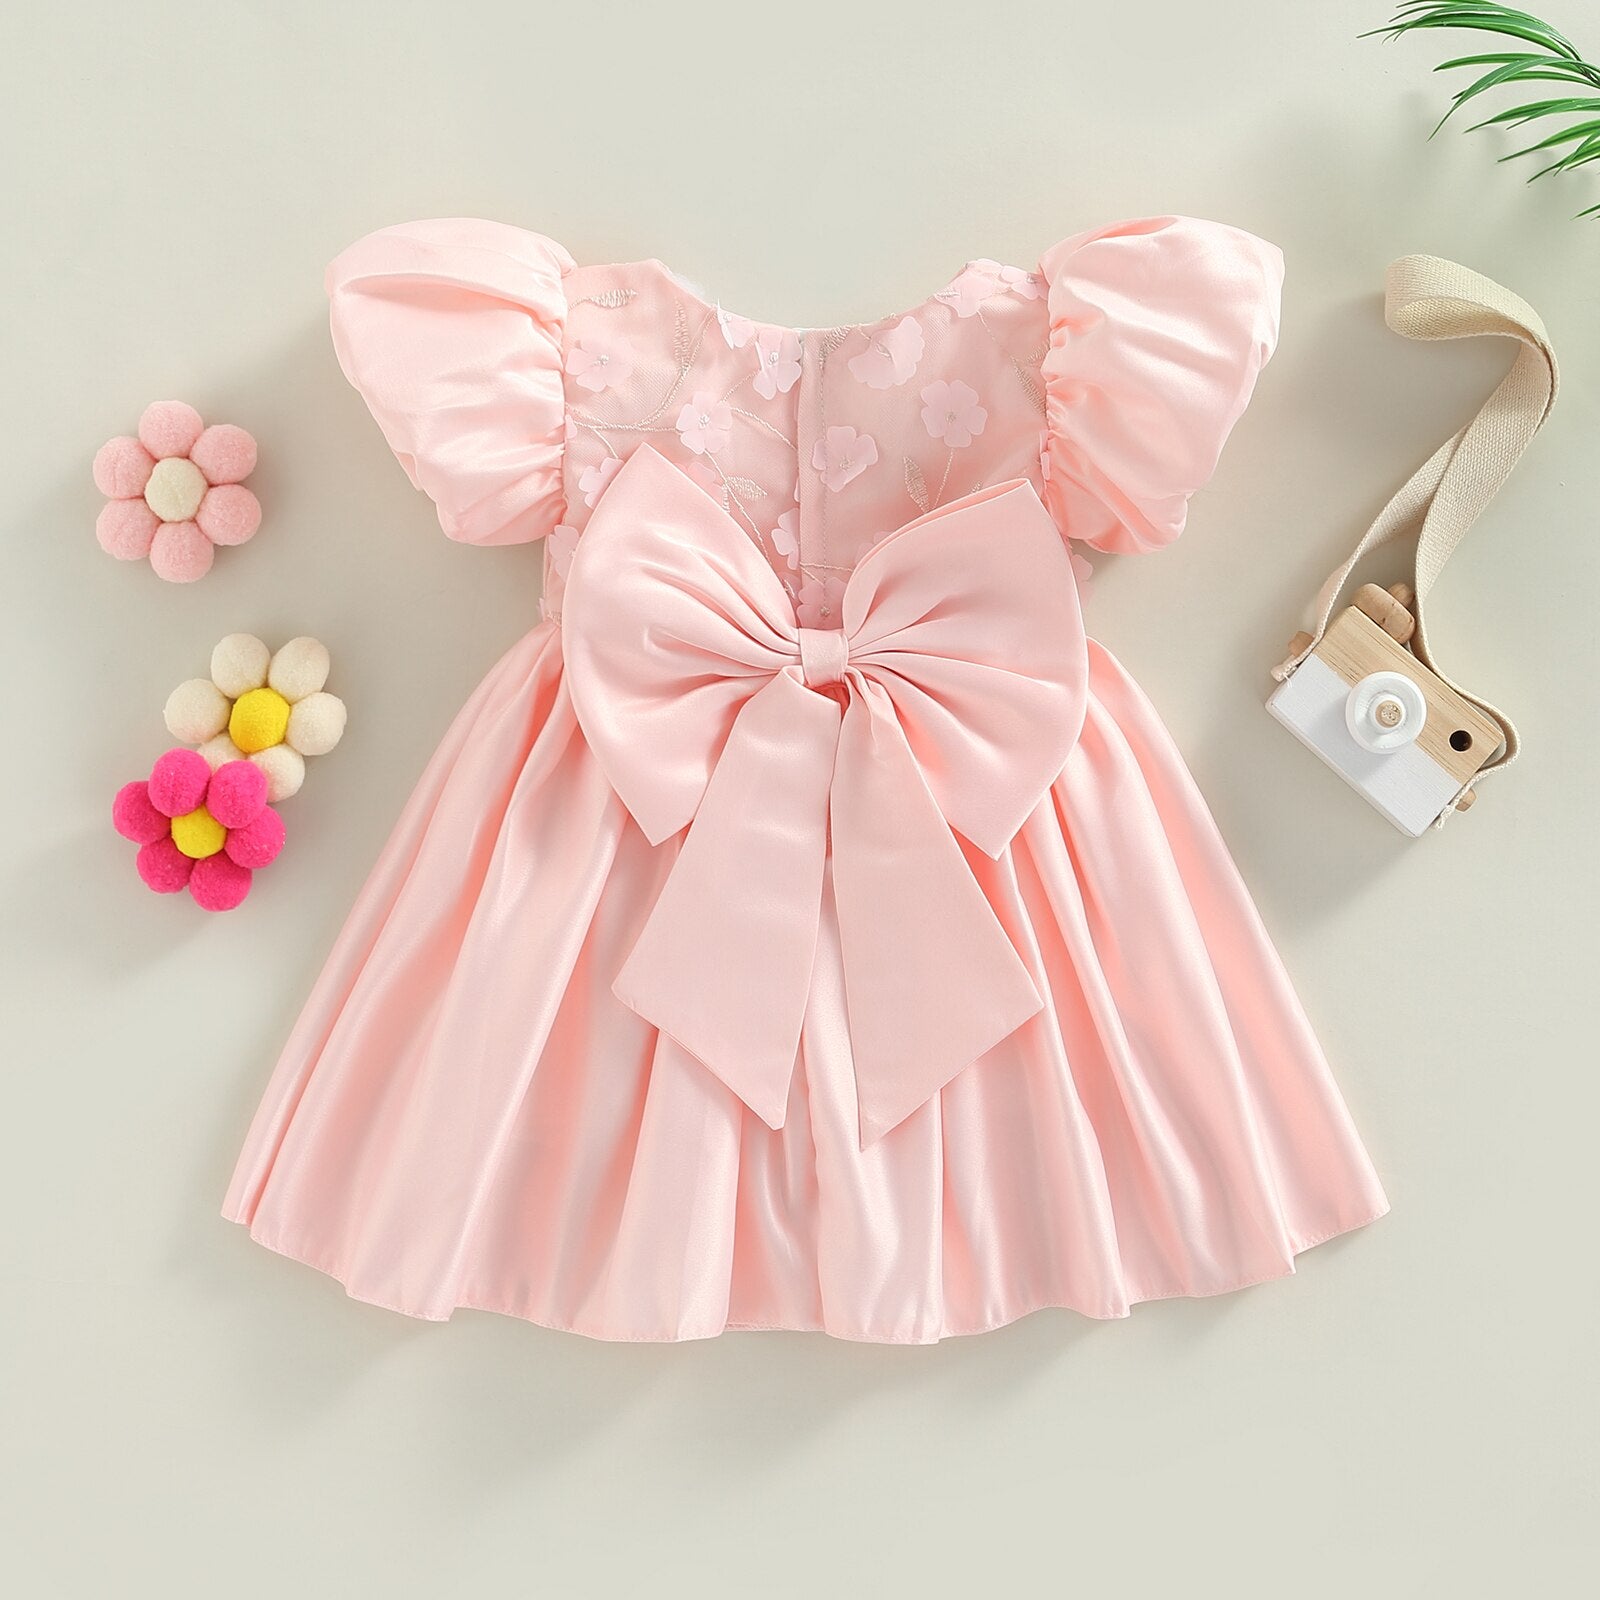 Vestido De Princesa Infantil com Preços Incríveis no Shoptime